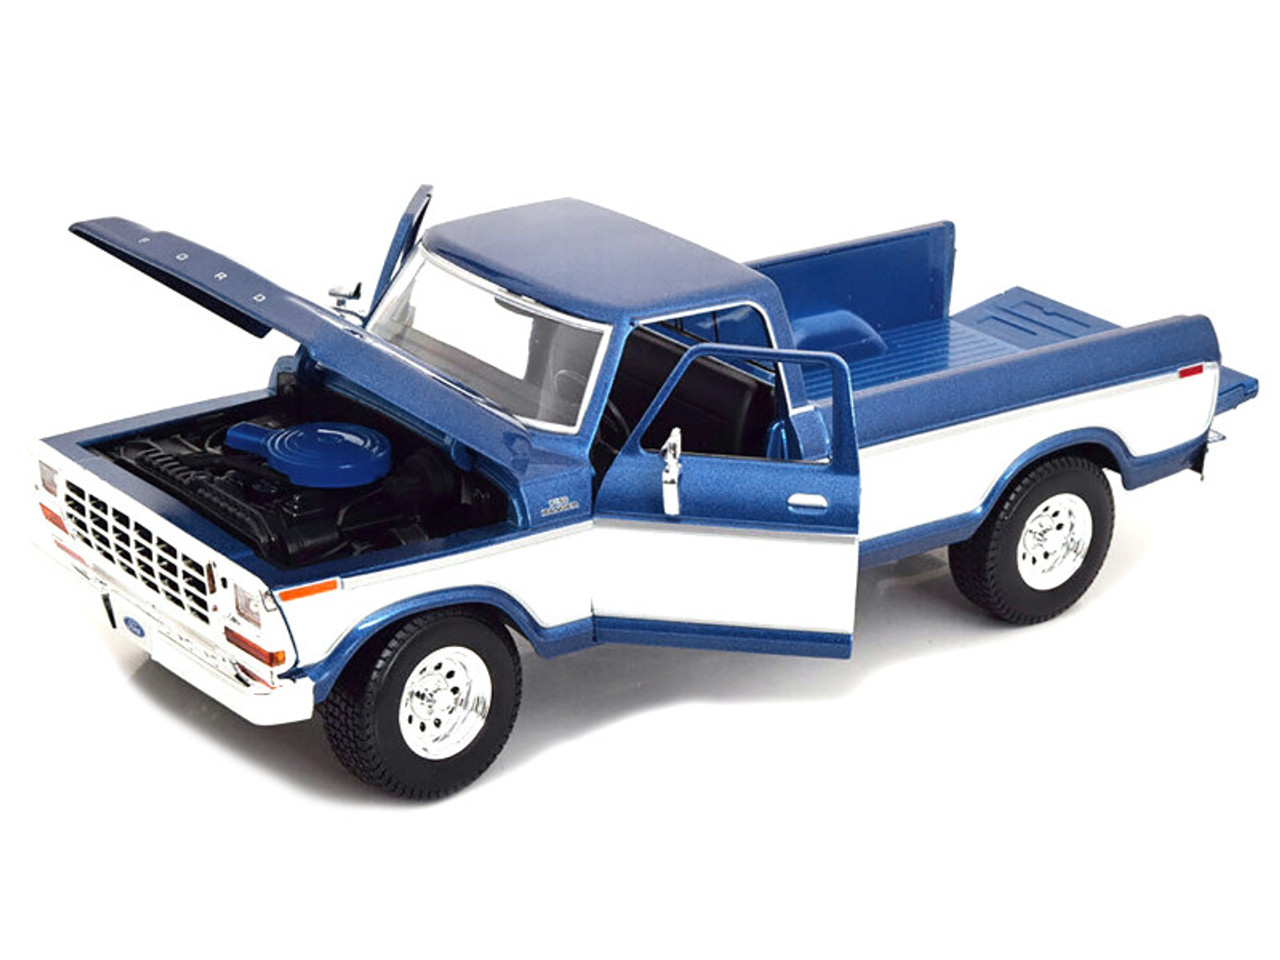 1/18 Maisto 1979 Ford F150 F-150 Pickup (Blue & White) Diecast Car Model